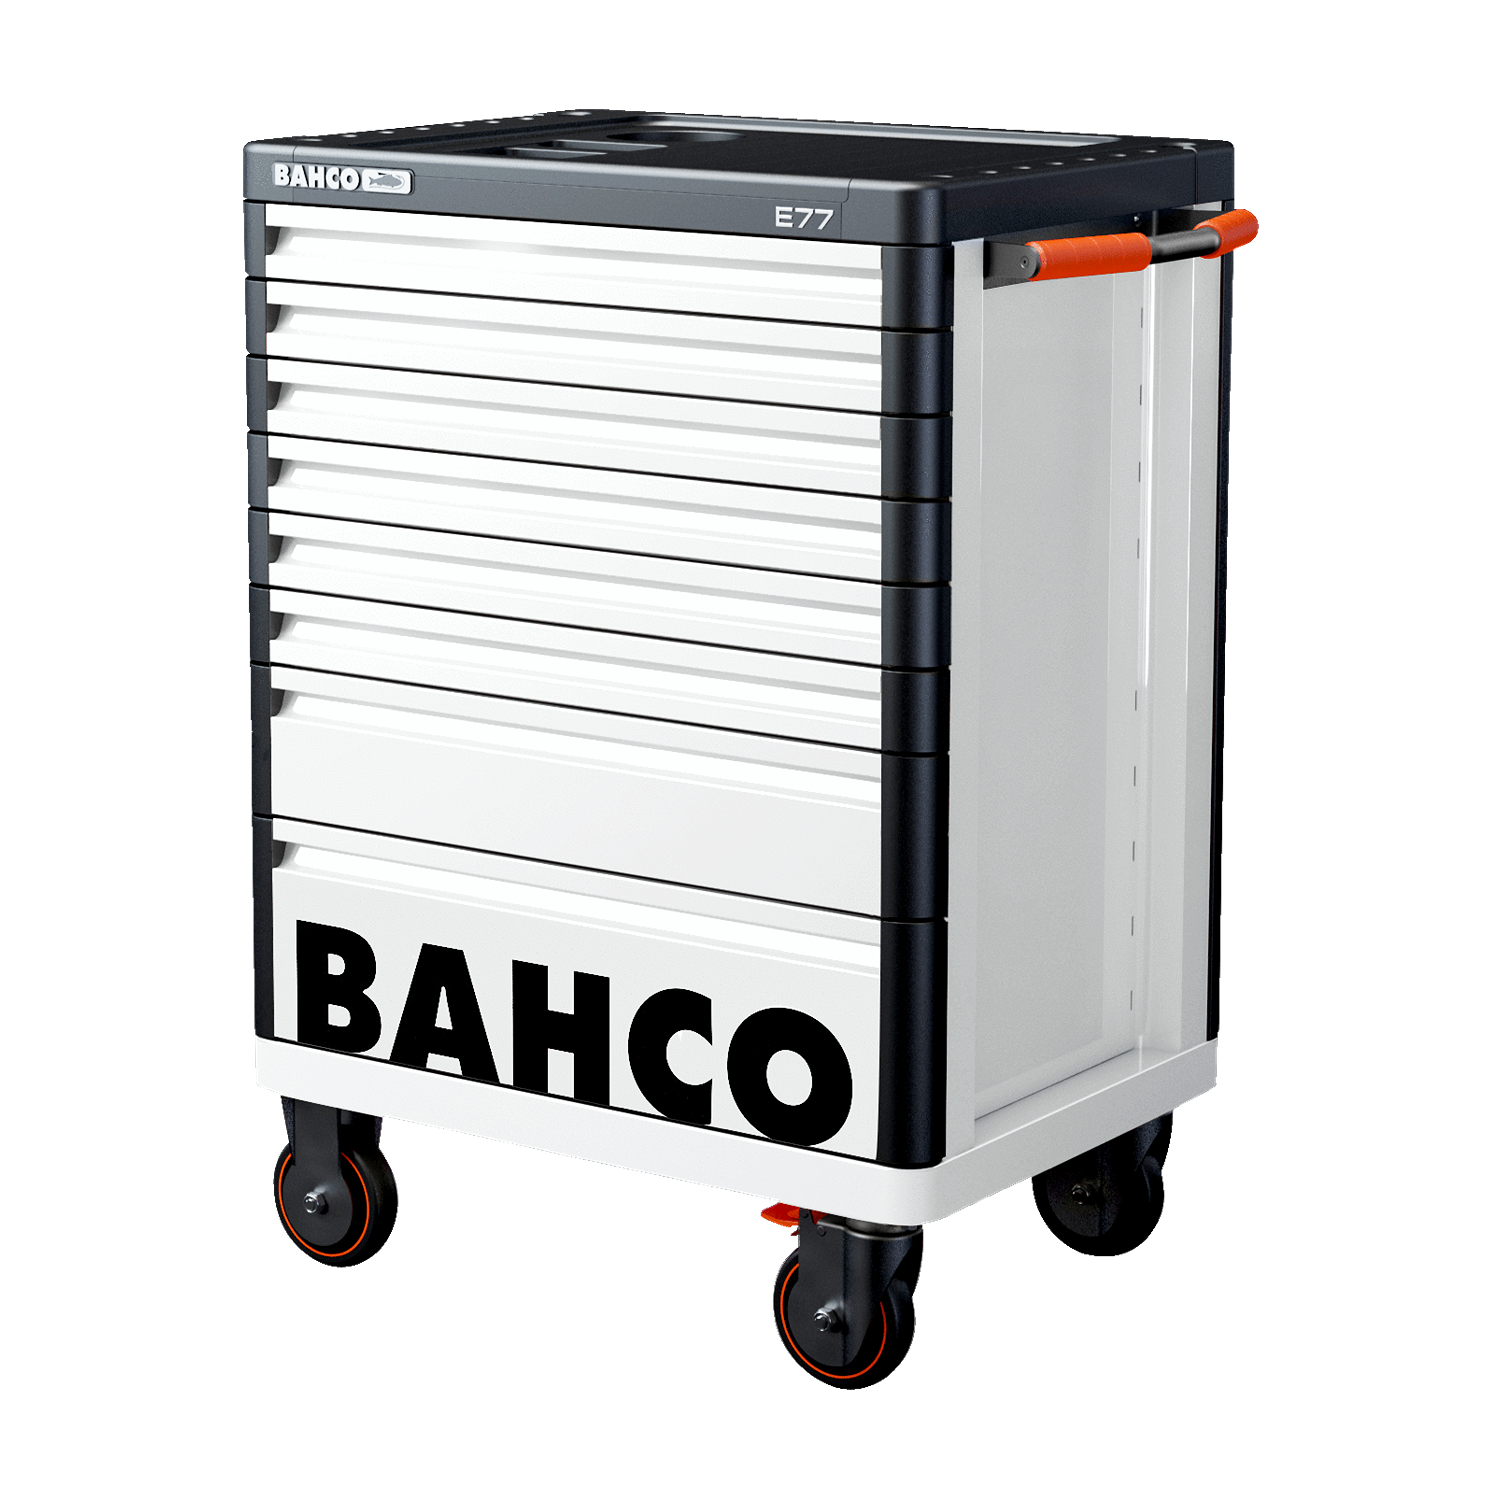 BAHCO 1477K7 26” E77 Premium Storage HUB Tool Trolleys - Premium Tool Trolley from BAHCO - Shop now at Yew Aik.